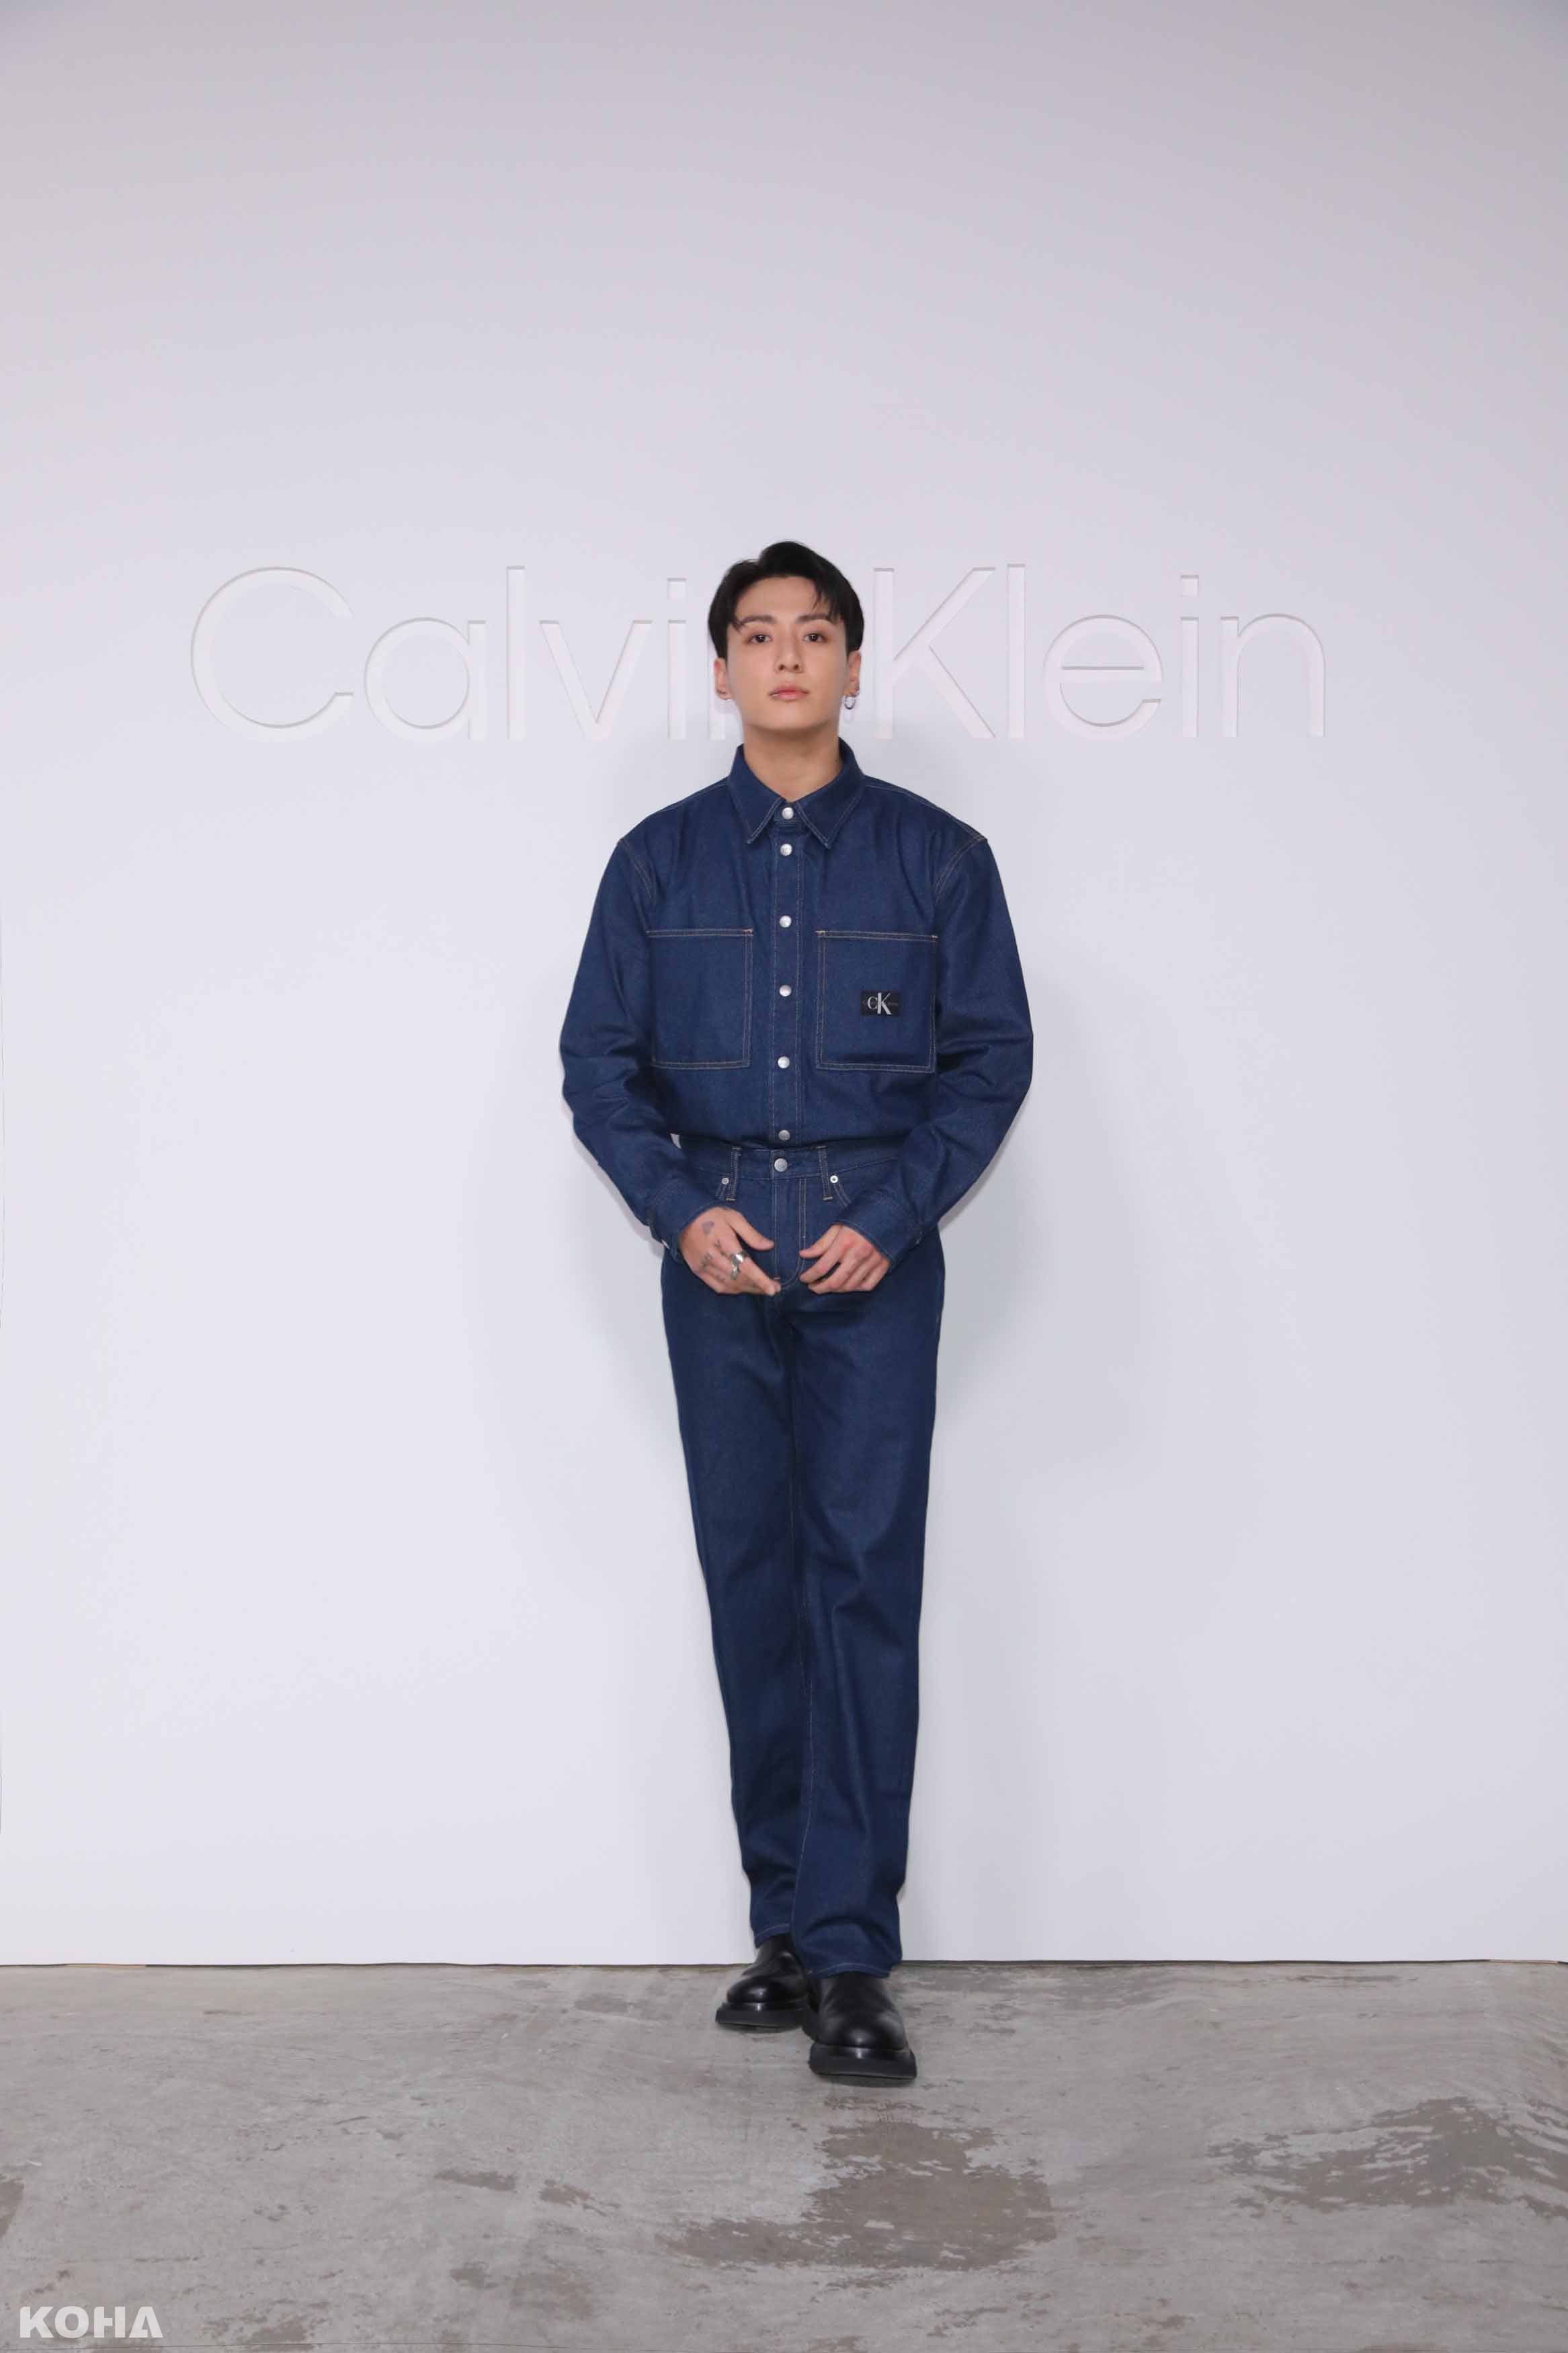 柾國Jung Kook 穿著 Calvin Klein 標誌性丹寧套裝現身品牌的時尚和音樂之夜一